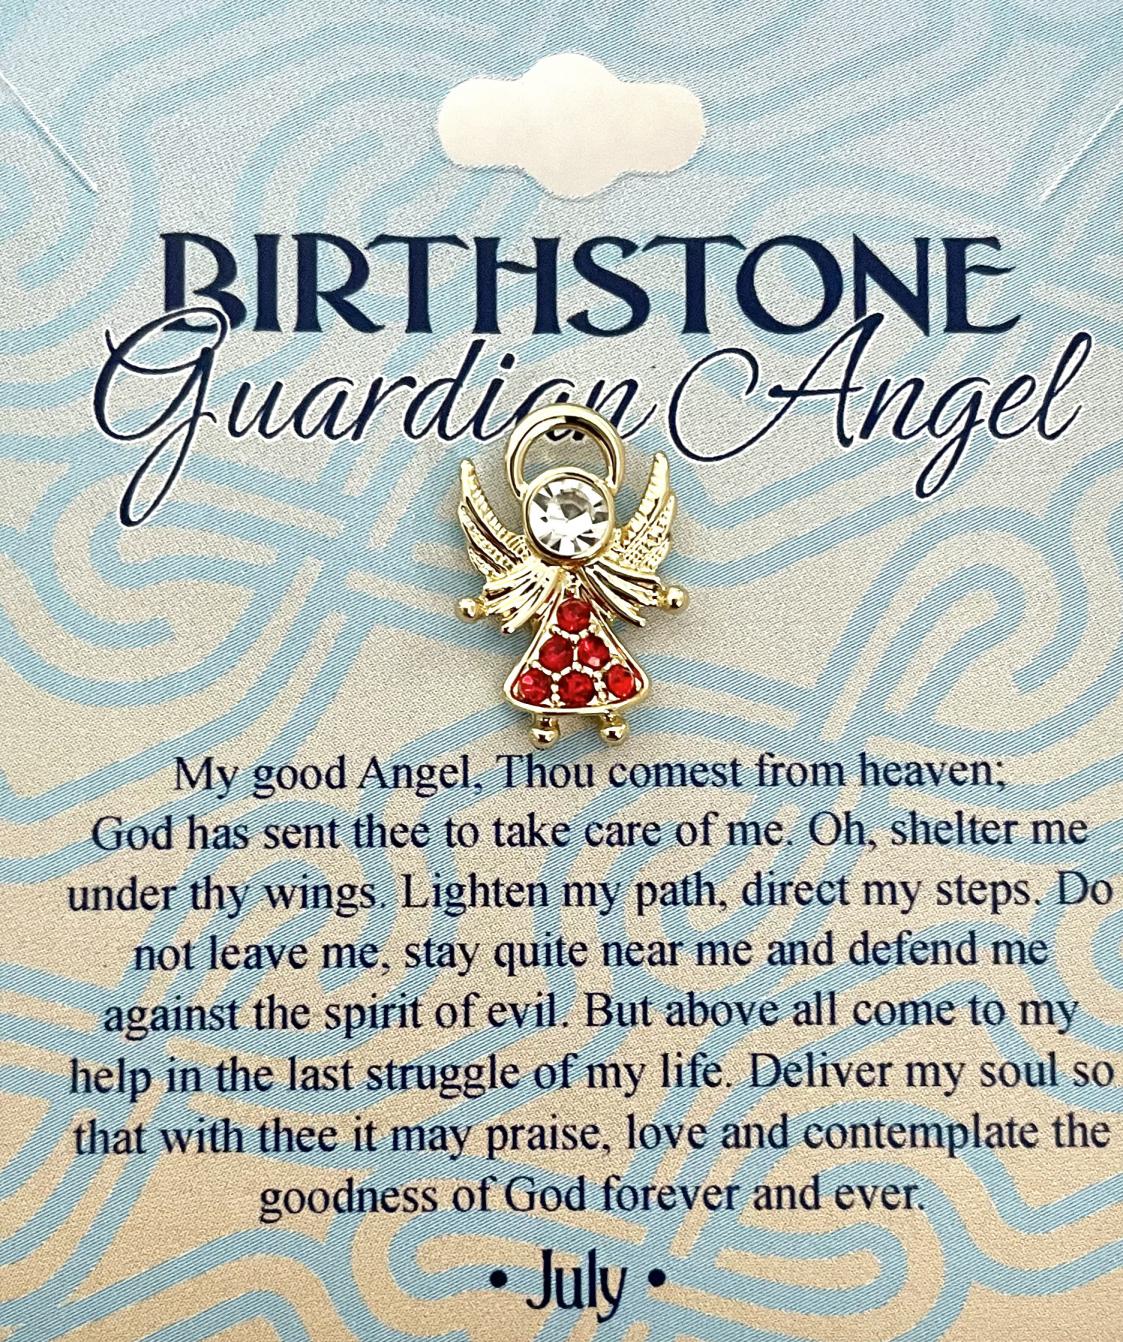 Austrian Crystal Birthstone Angel Pin July